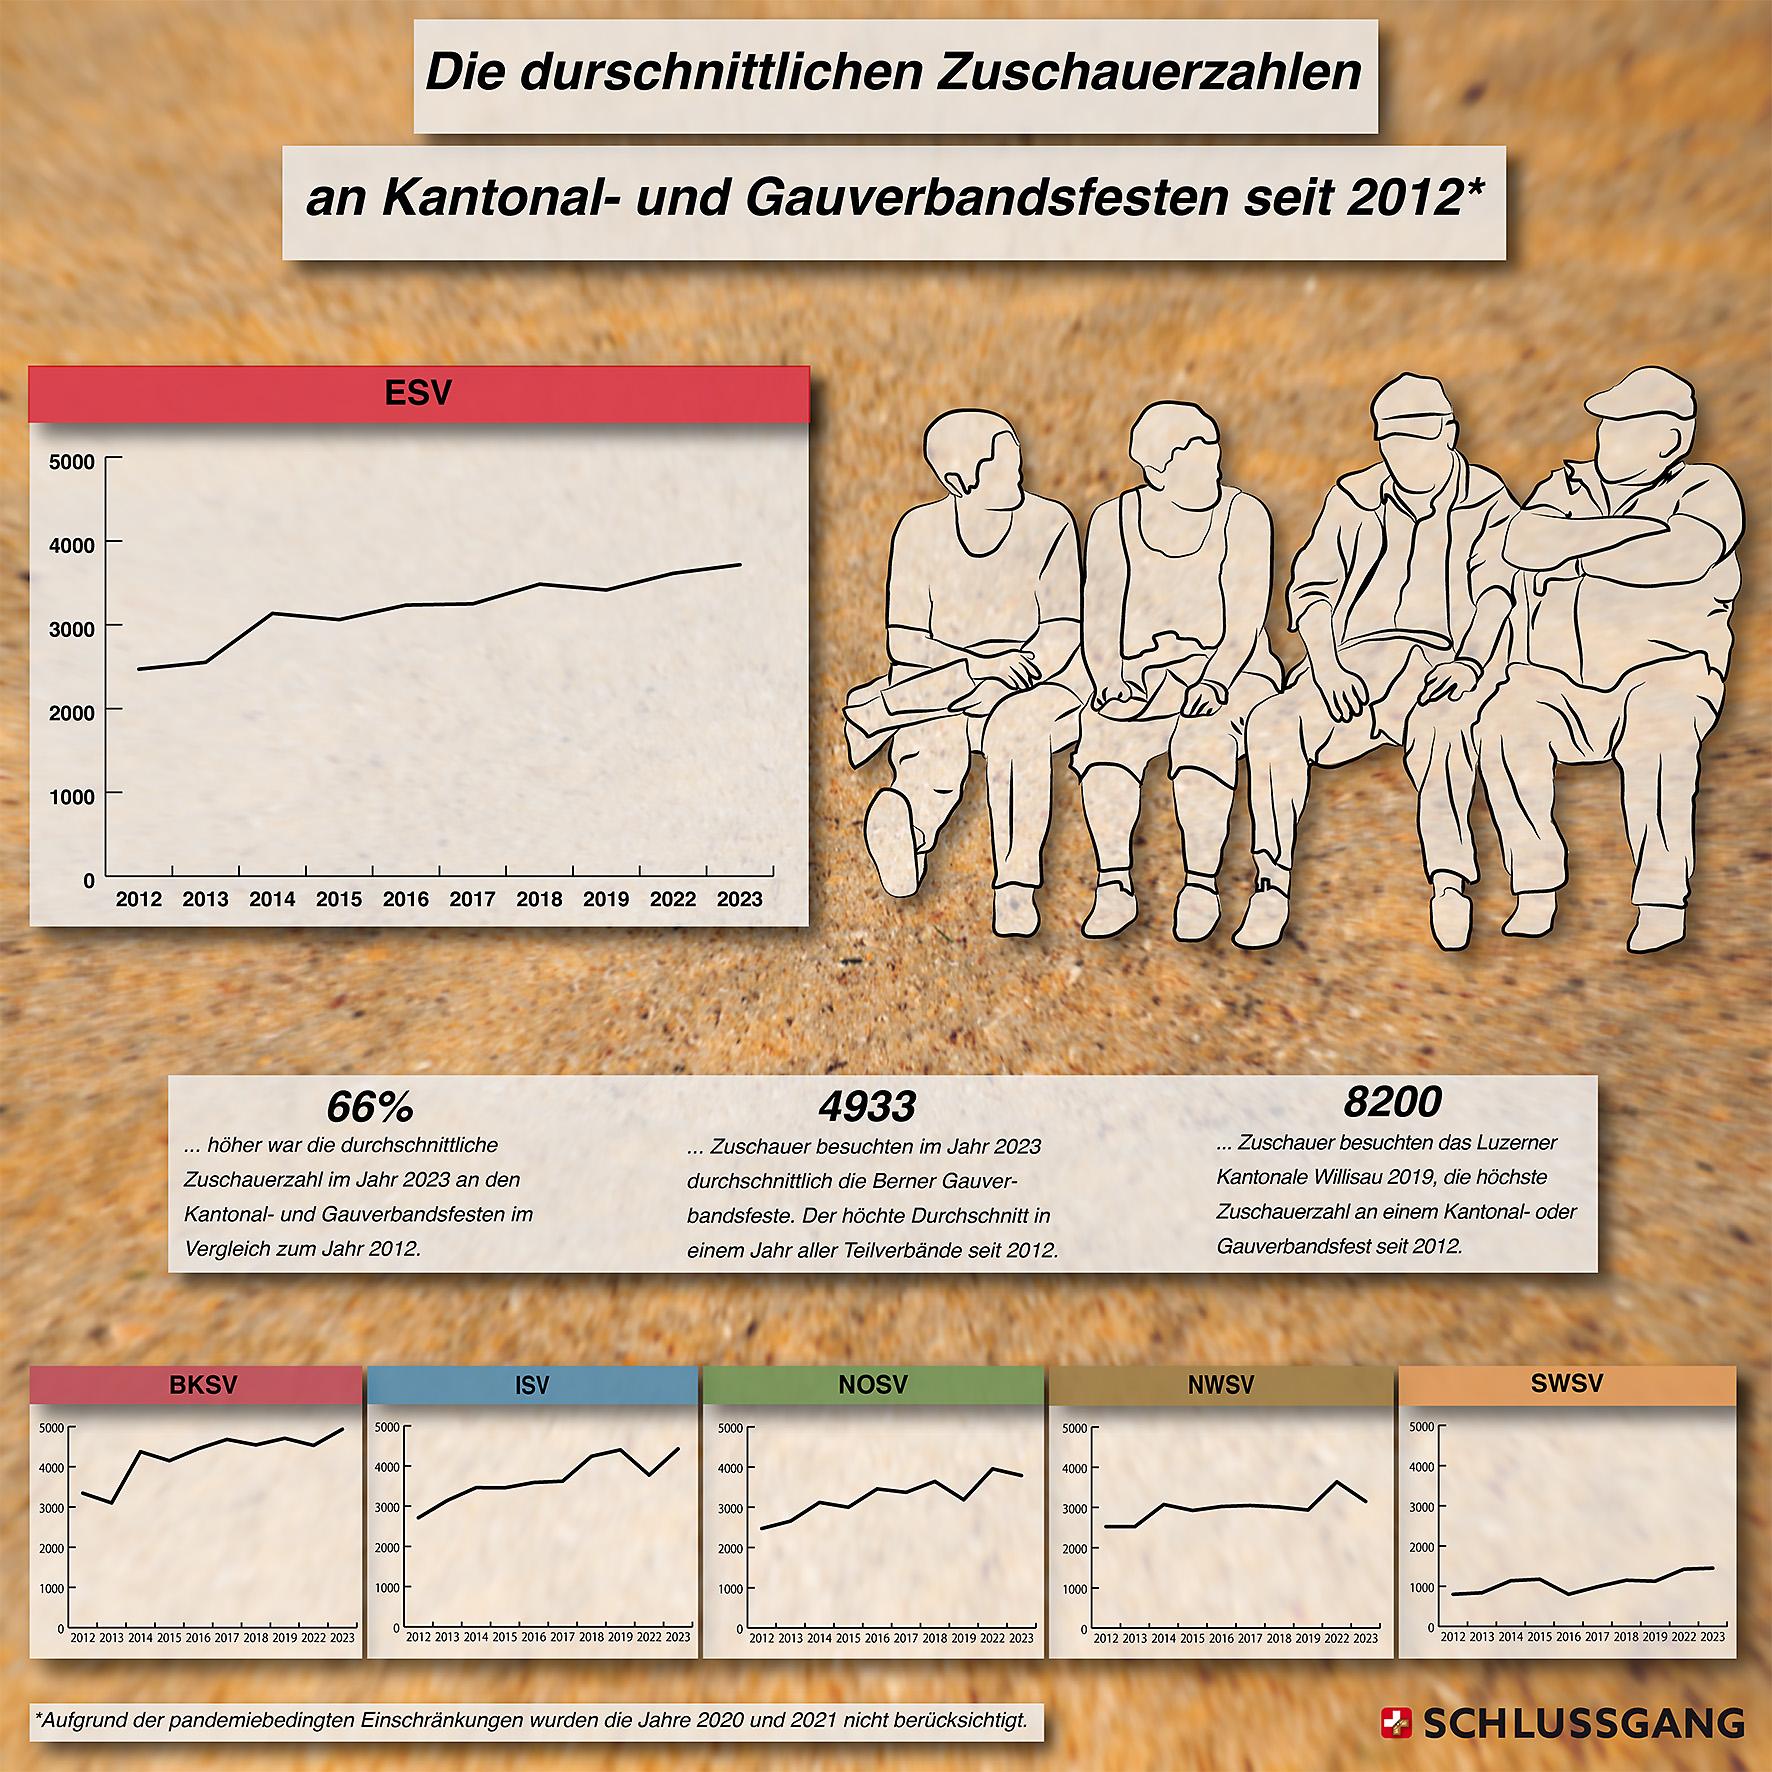 Auf einen Blick: Die durschnittlichen Zuschauerzahlen an den Kantonal- und Gauverbandsfesten seit 2012.